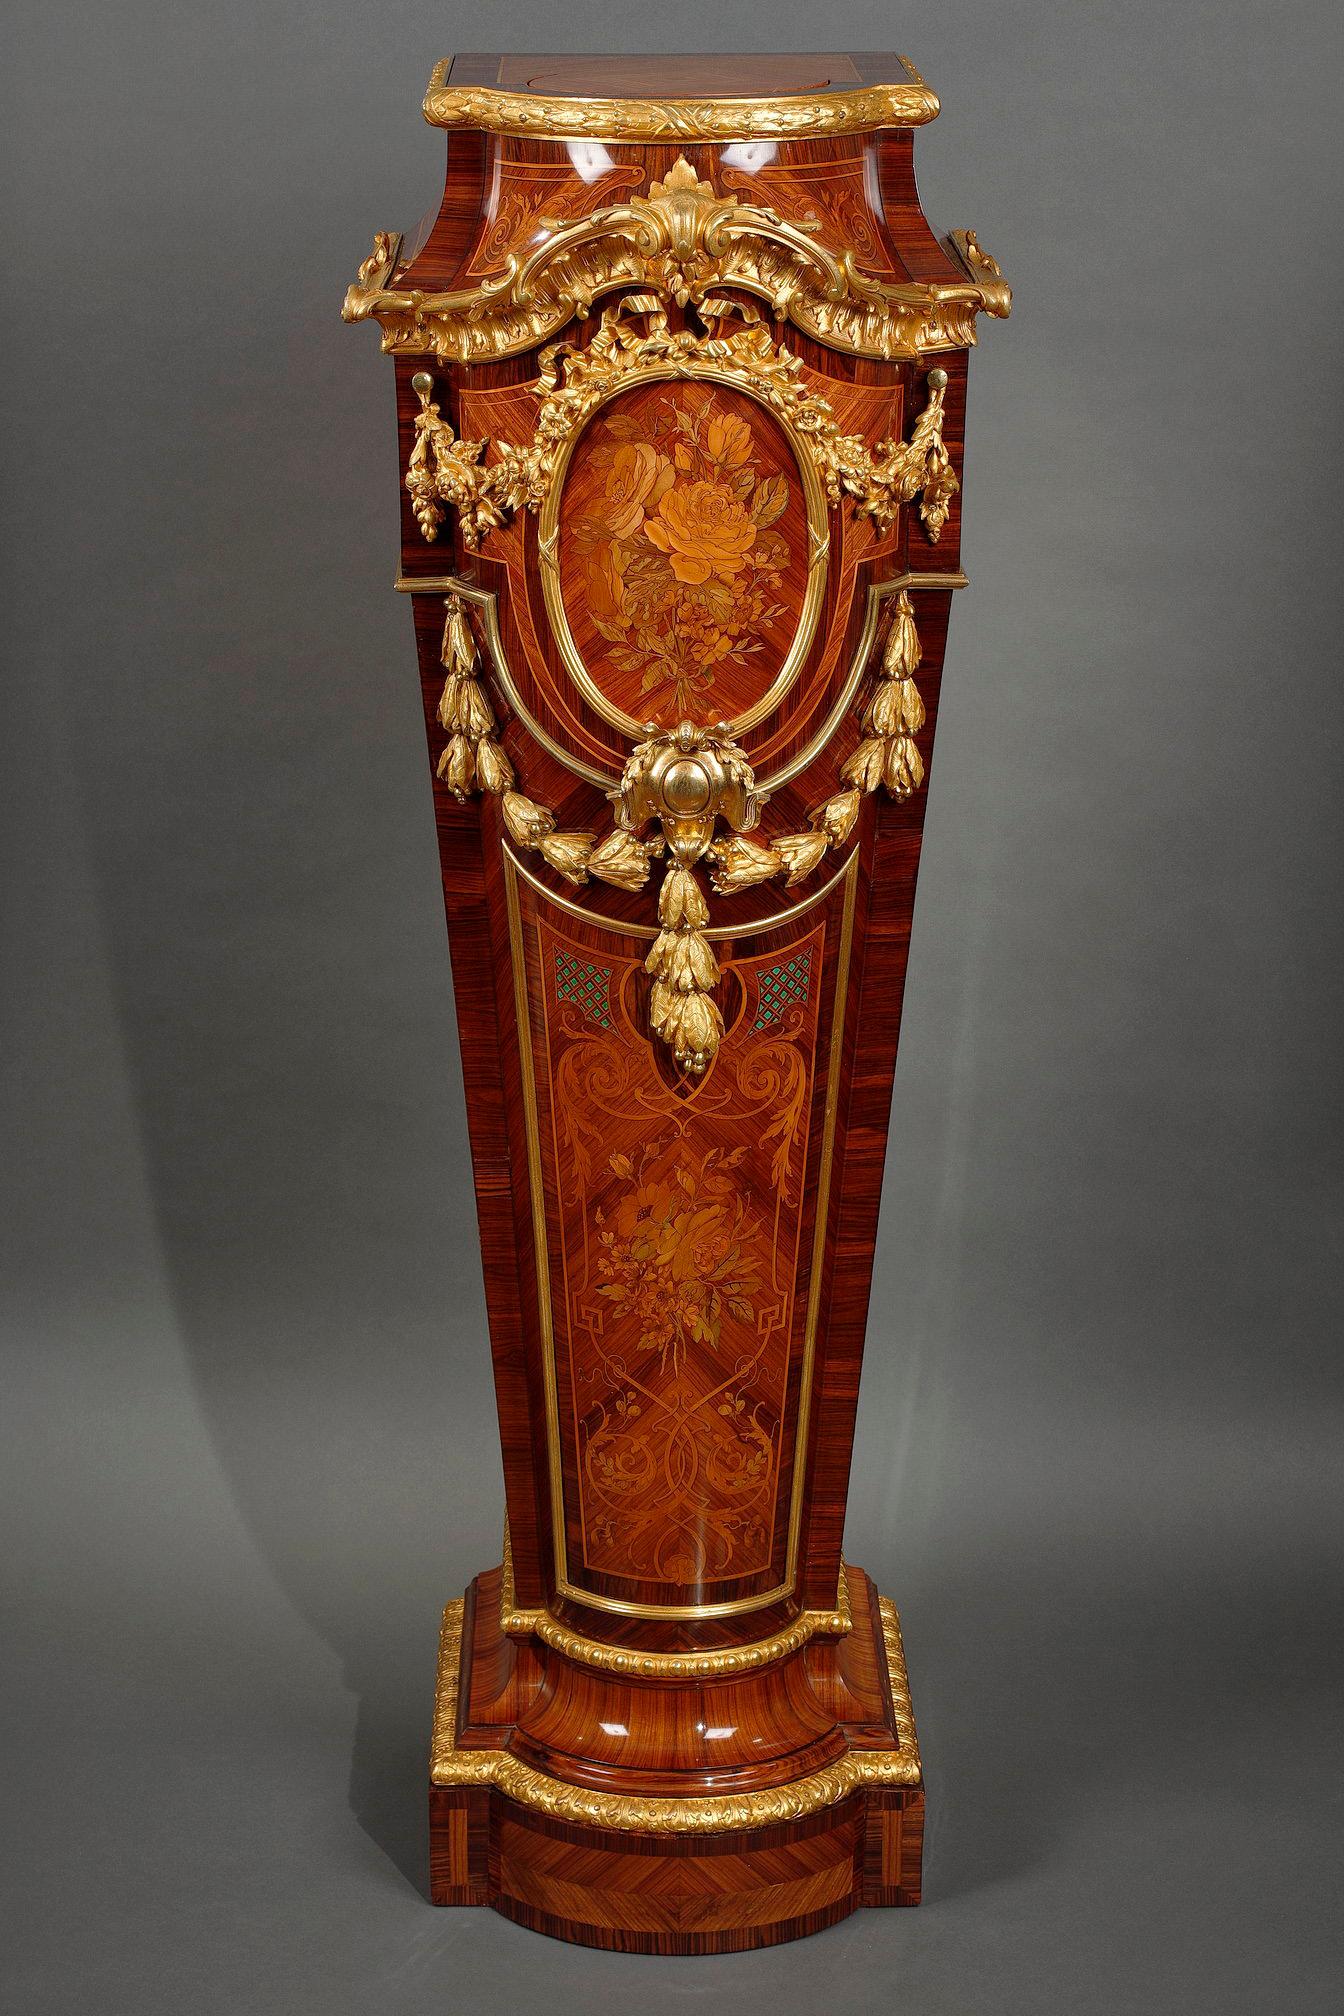 Seltener Napoleon-III-Sockel mit geschwungener Front, aus Holzfurnier und ziselierten und vergoldeten Bronzeverzierungen. Er wird von einer drehbaren runden Platte gekrönt, die von einem Lorbeerfries unterstrichen wird, und ist an drei Seiten mit